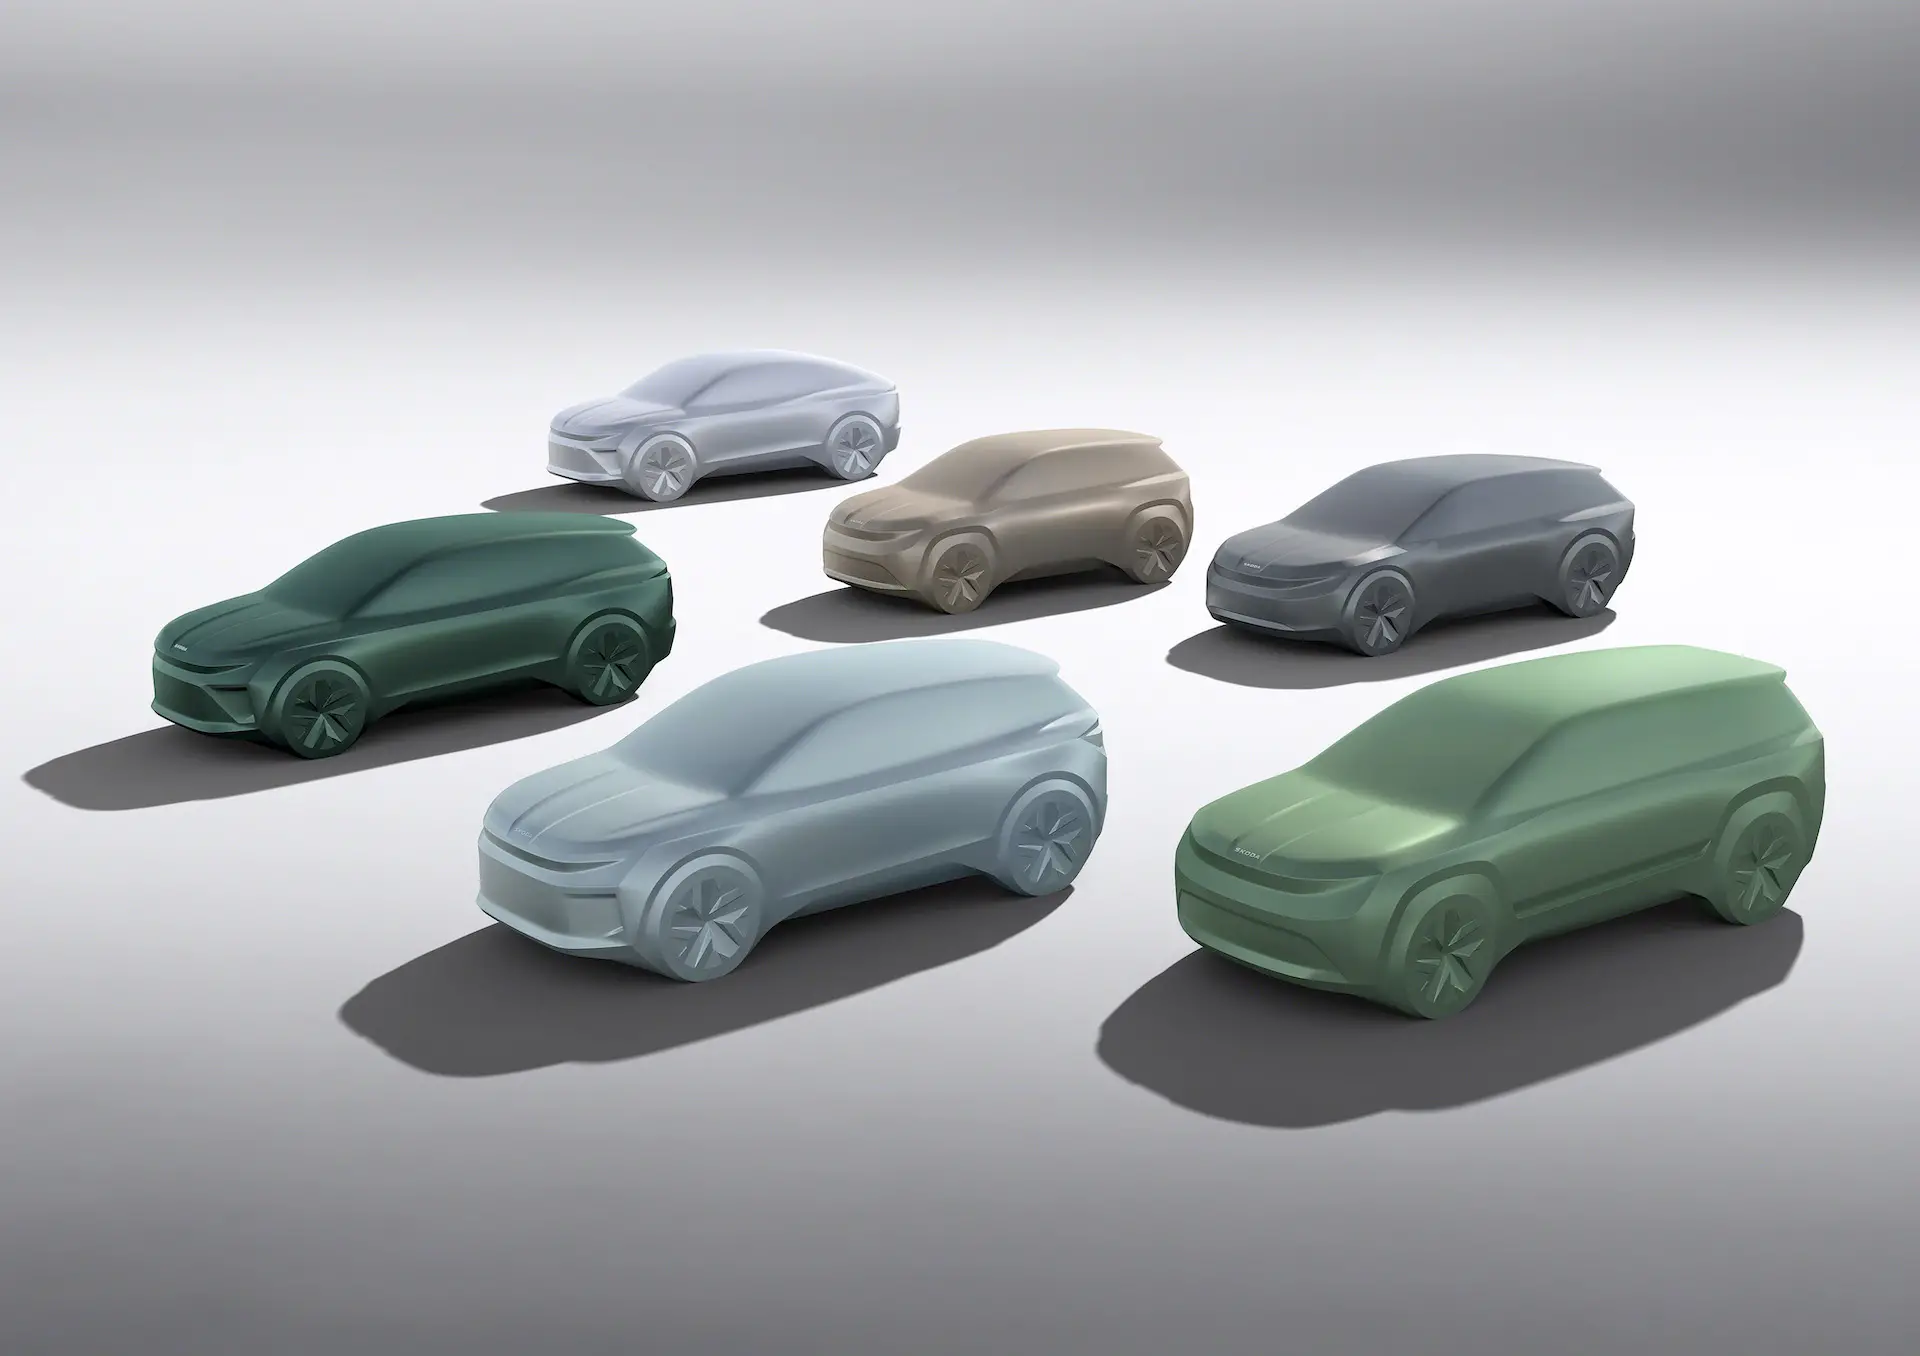 До 2026 года запланировано шесть новых моделей Skoda Bev, мы знаем, какие именно!